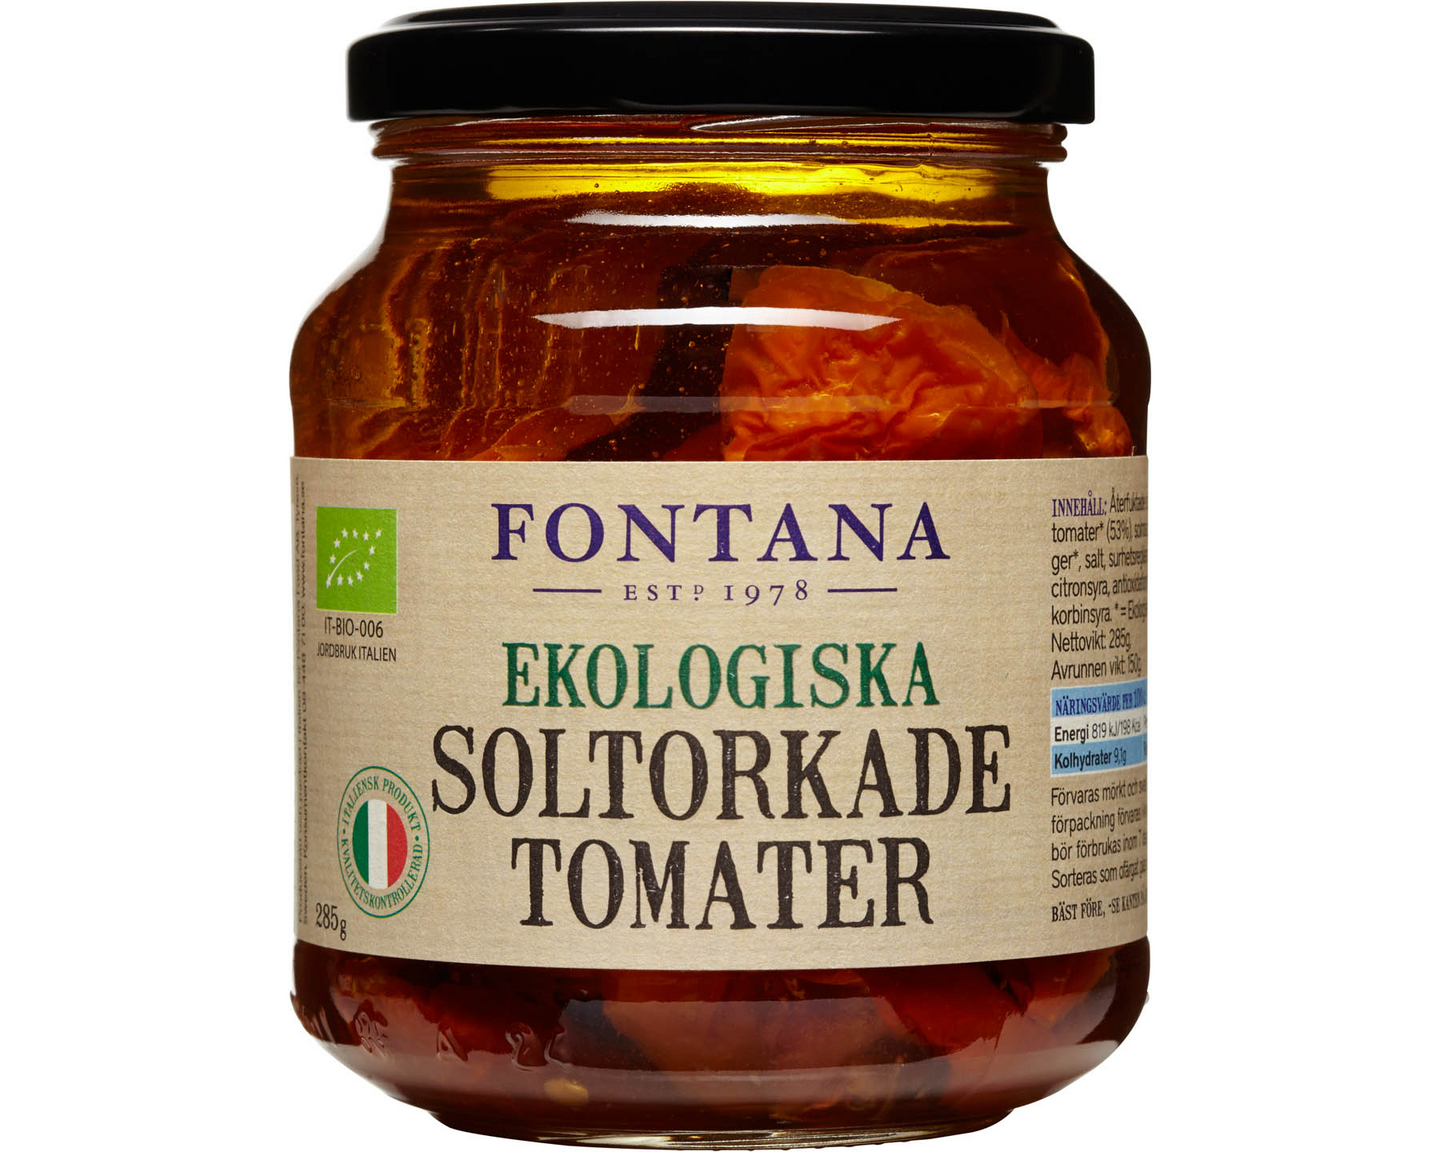 Fontana Luomu aurinkokuivattuja tomaatteja öljyssä 285g/150g